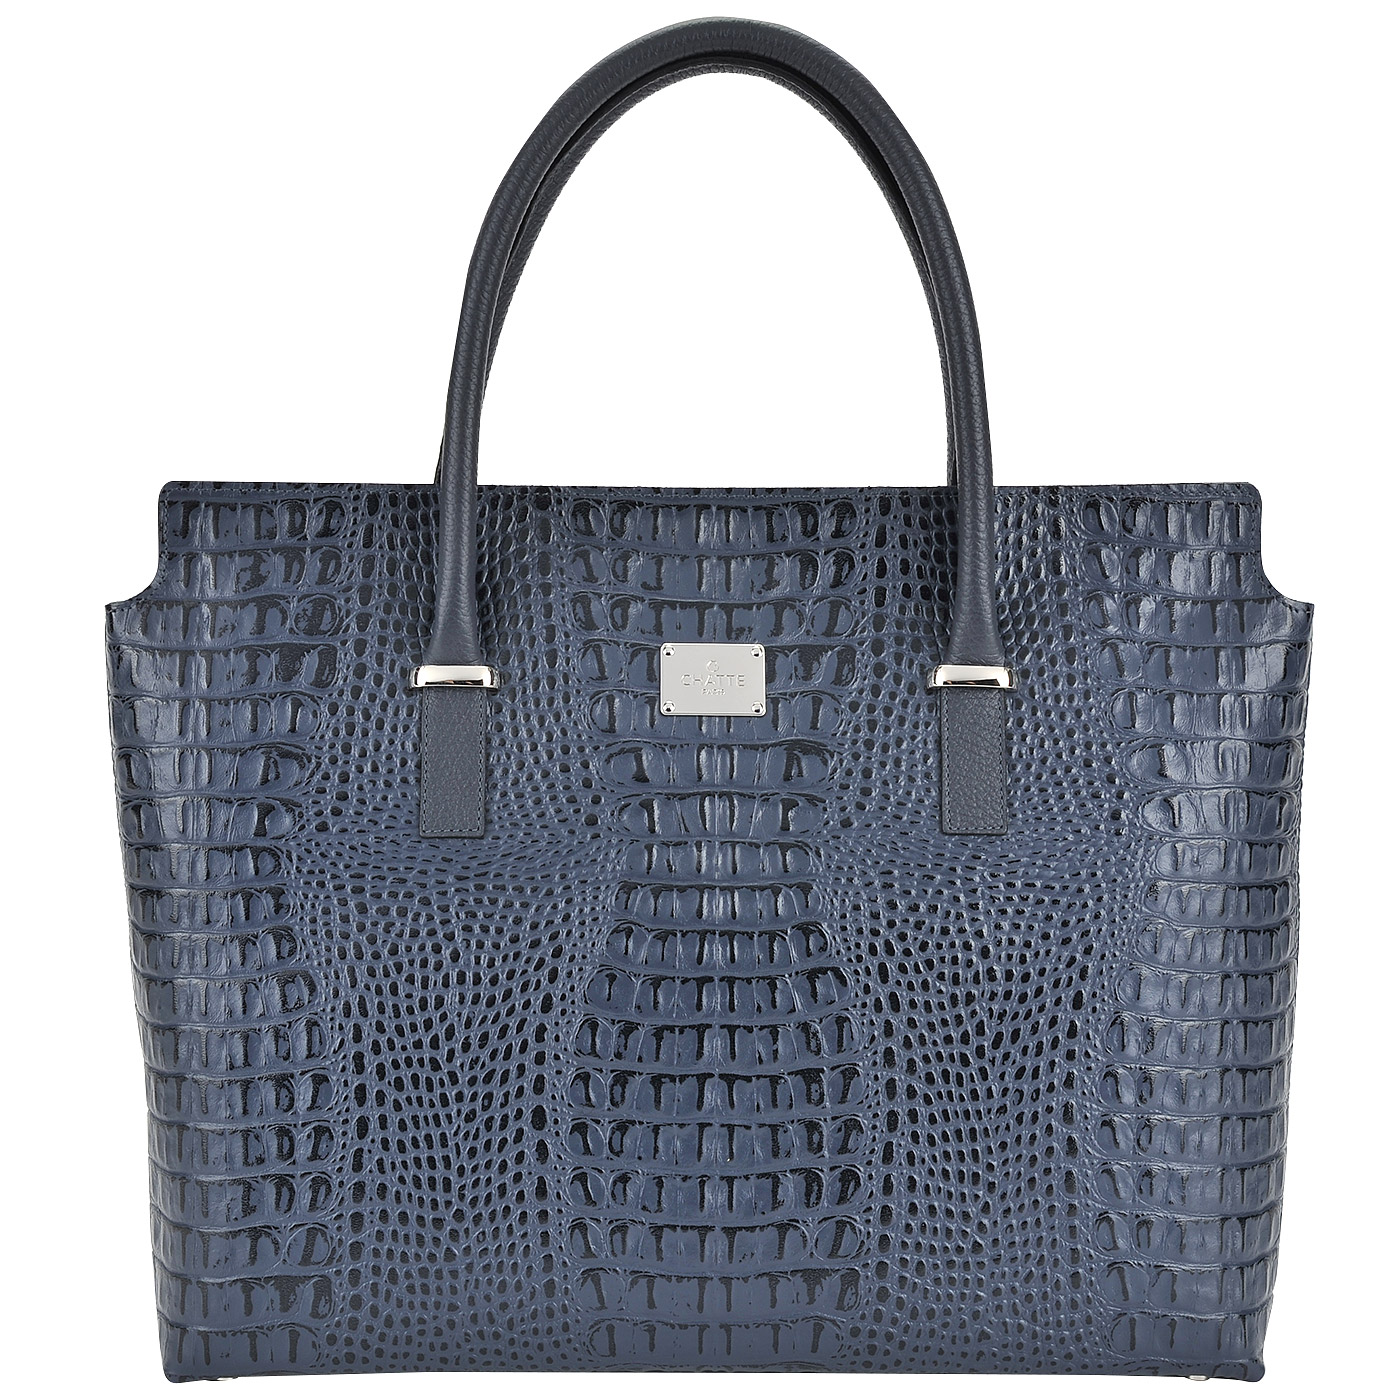 Chatte Женская синяя сумка с отделкой под крокодиловую кожу